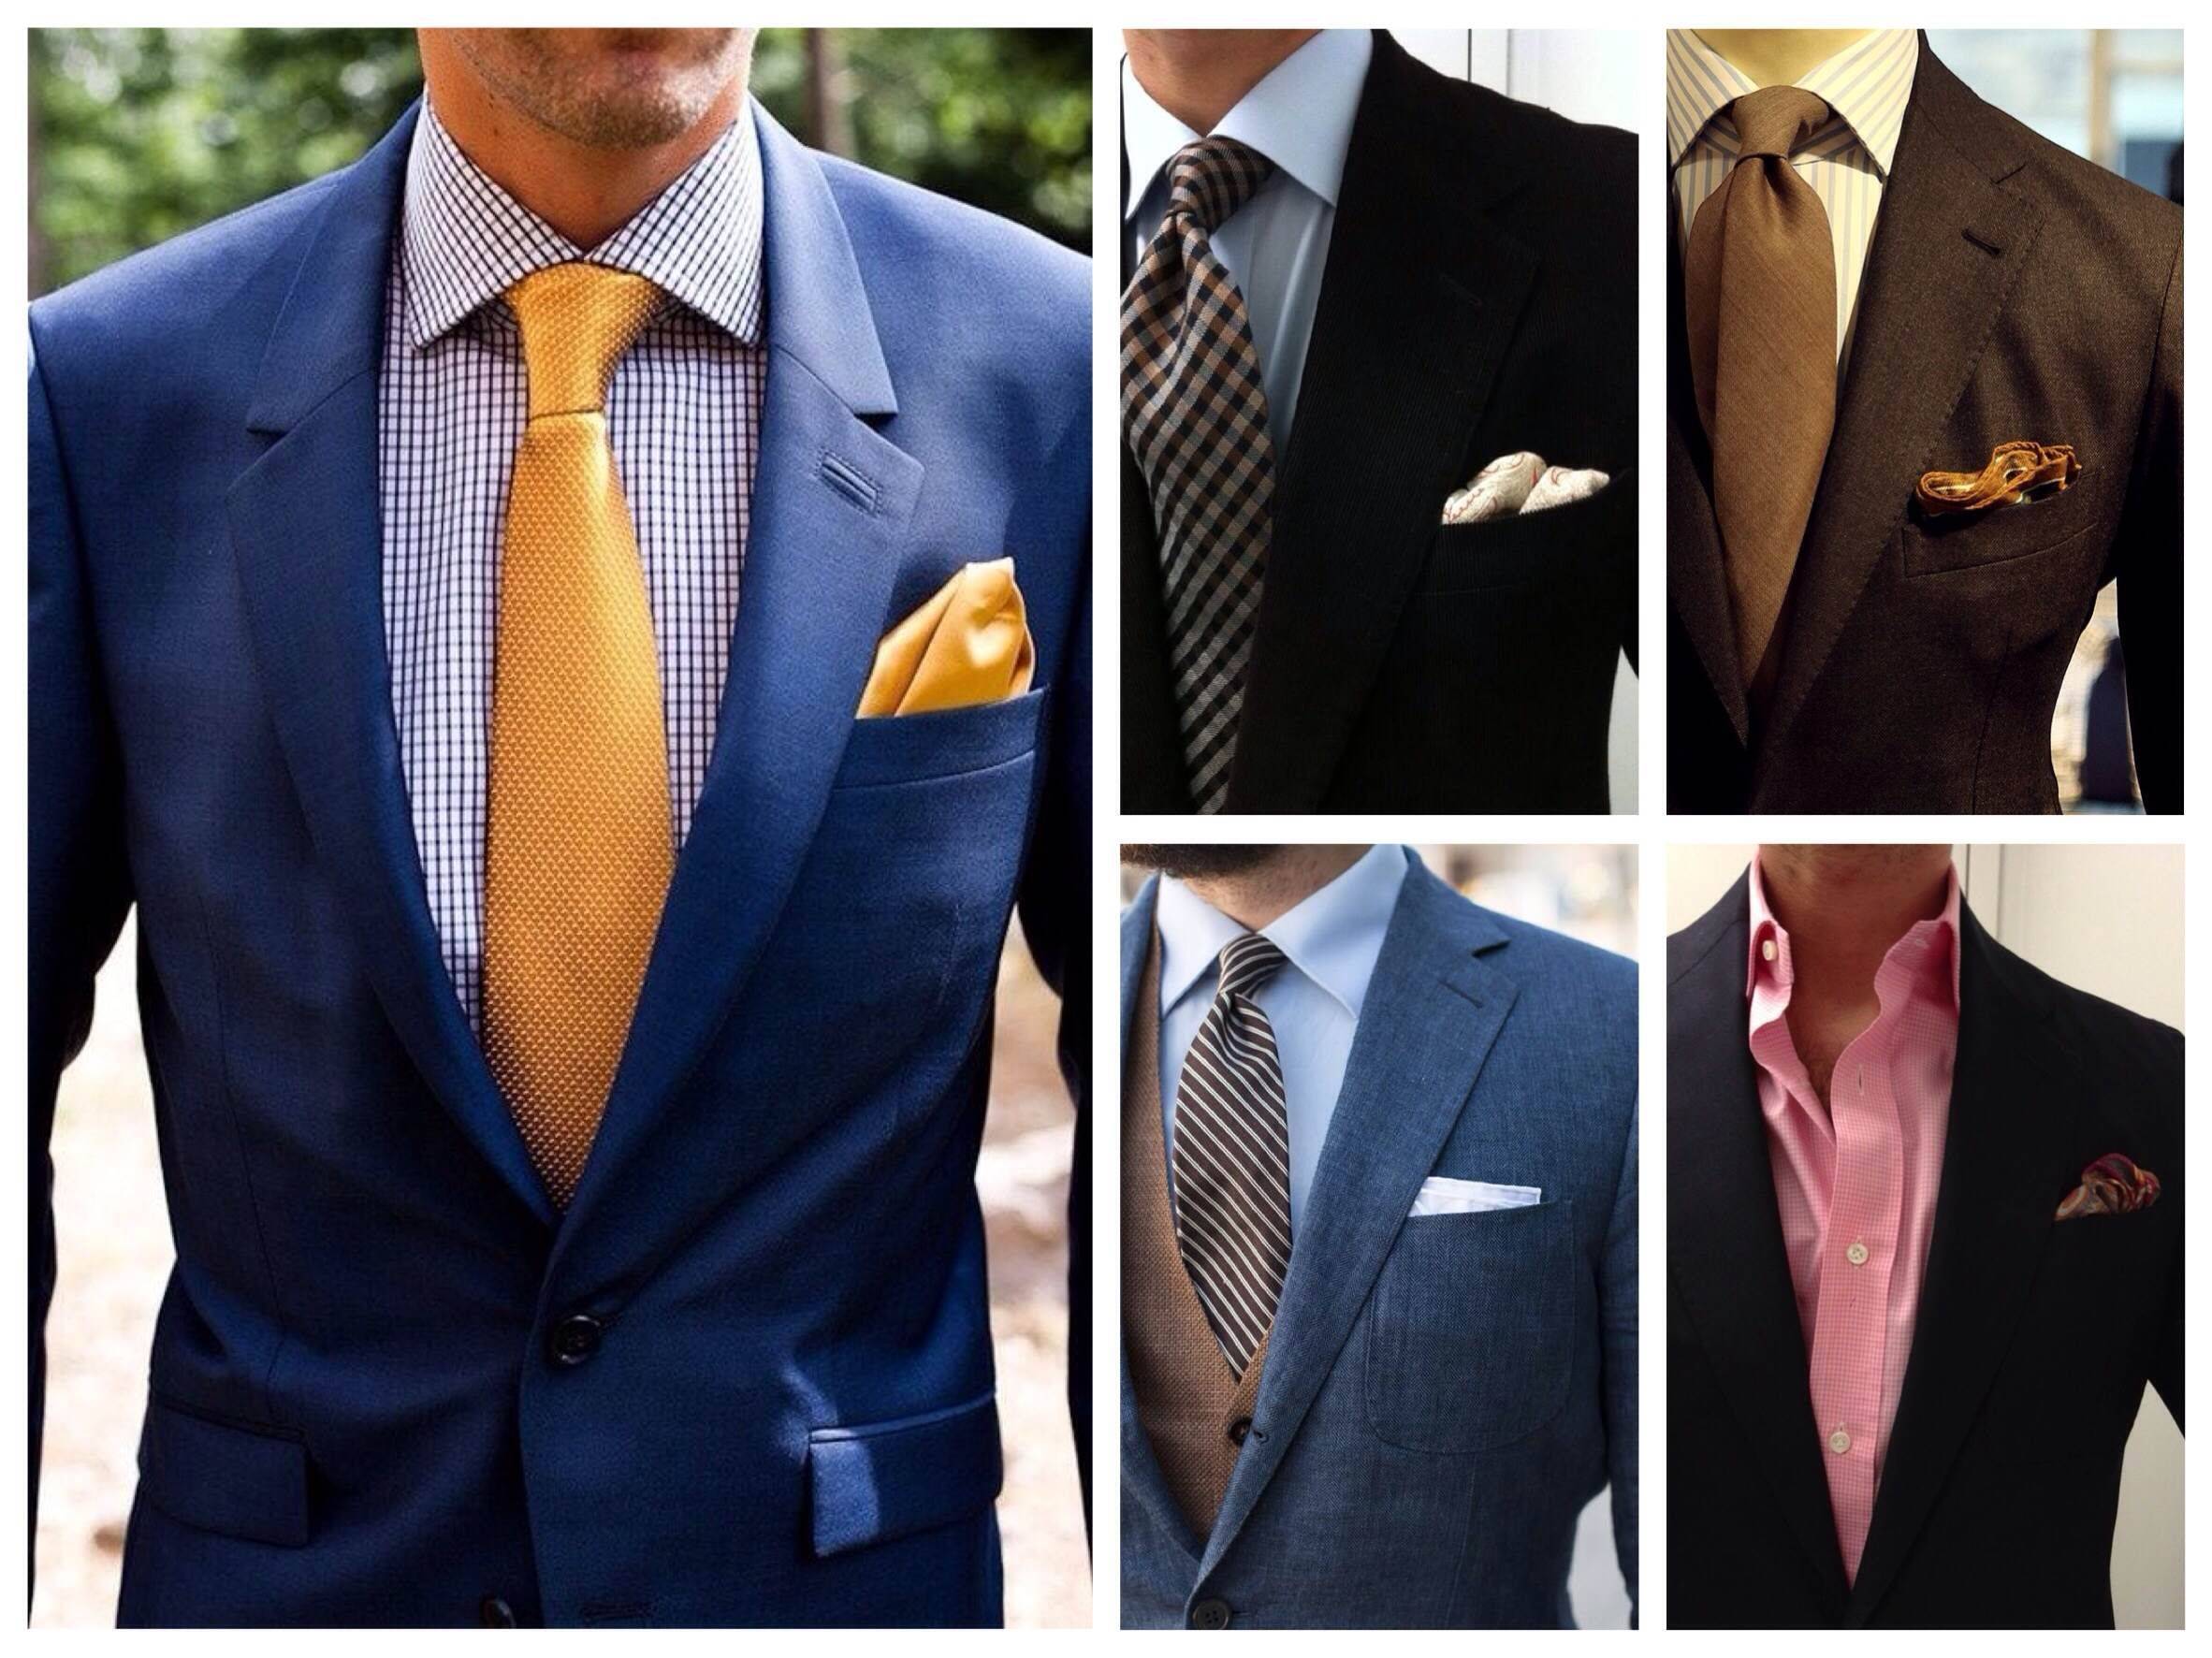 Как подобрать галстук к рубашке и костюму: под что подбирают этот аксессуар мужского гардероба, как правильно сочетать цвета, дополнительные аксессуары